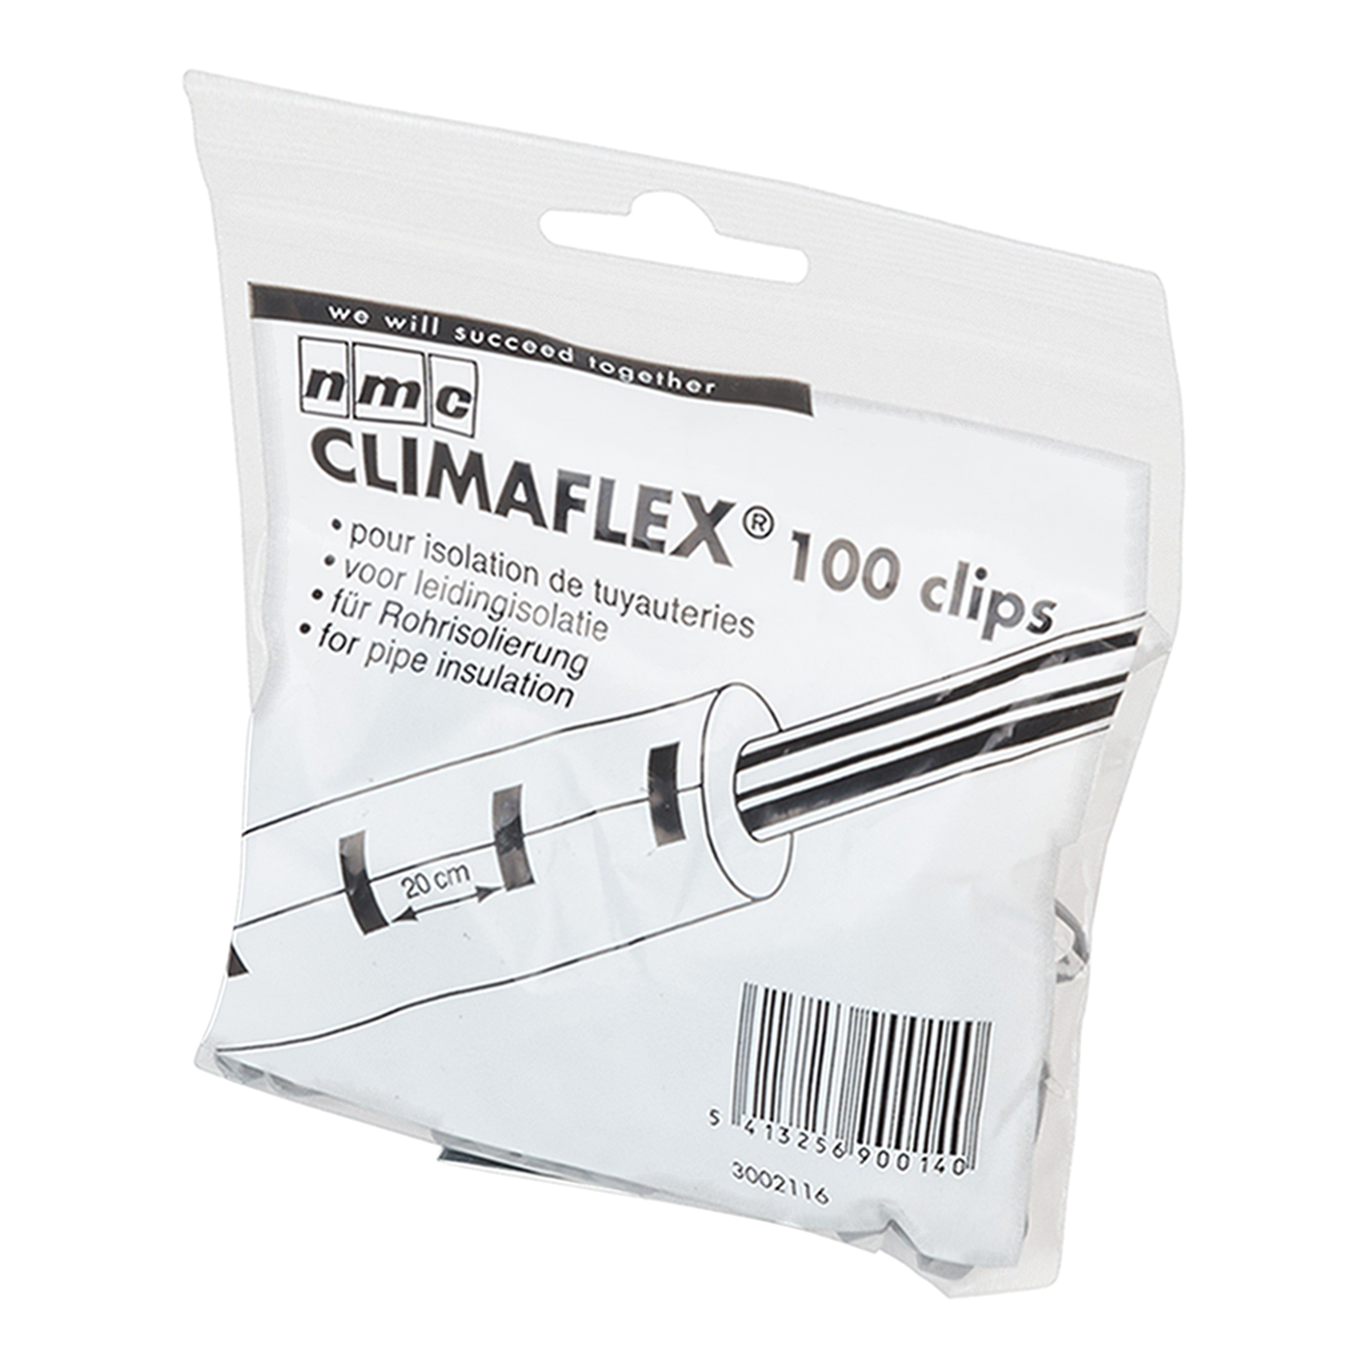 Climaflex Clips